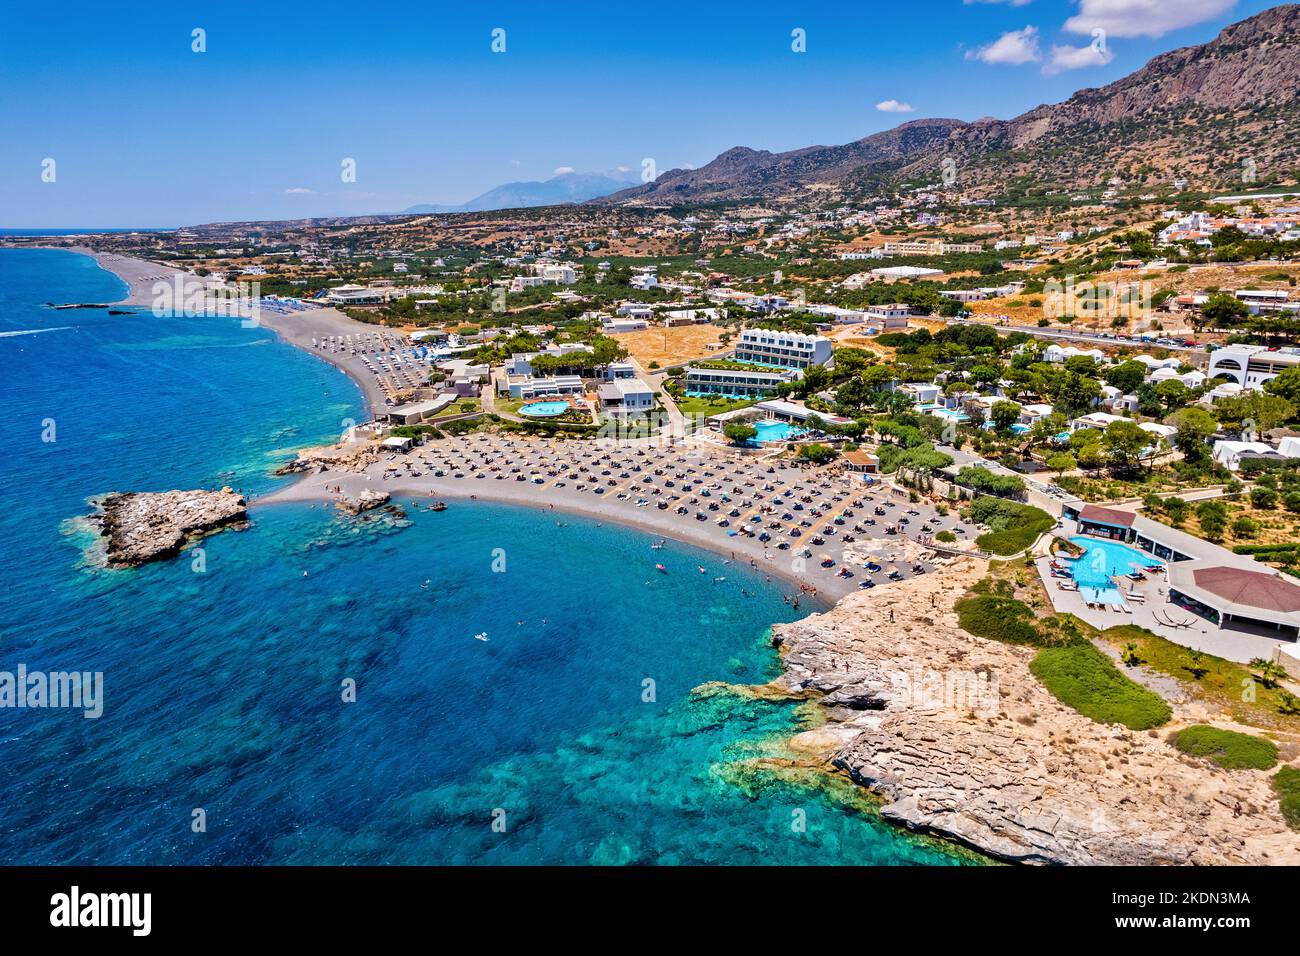 Vista aérea (drone) de la playa de la bahía de Kakkos (bandera azul concedida), entre los pueblos de Ferma y Koutsounari, Ierapetral, Lassithi, Creta, Grecia. Foto de stock